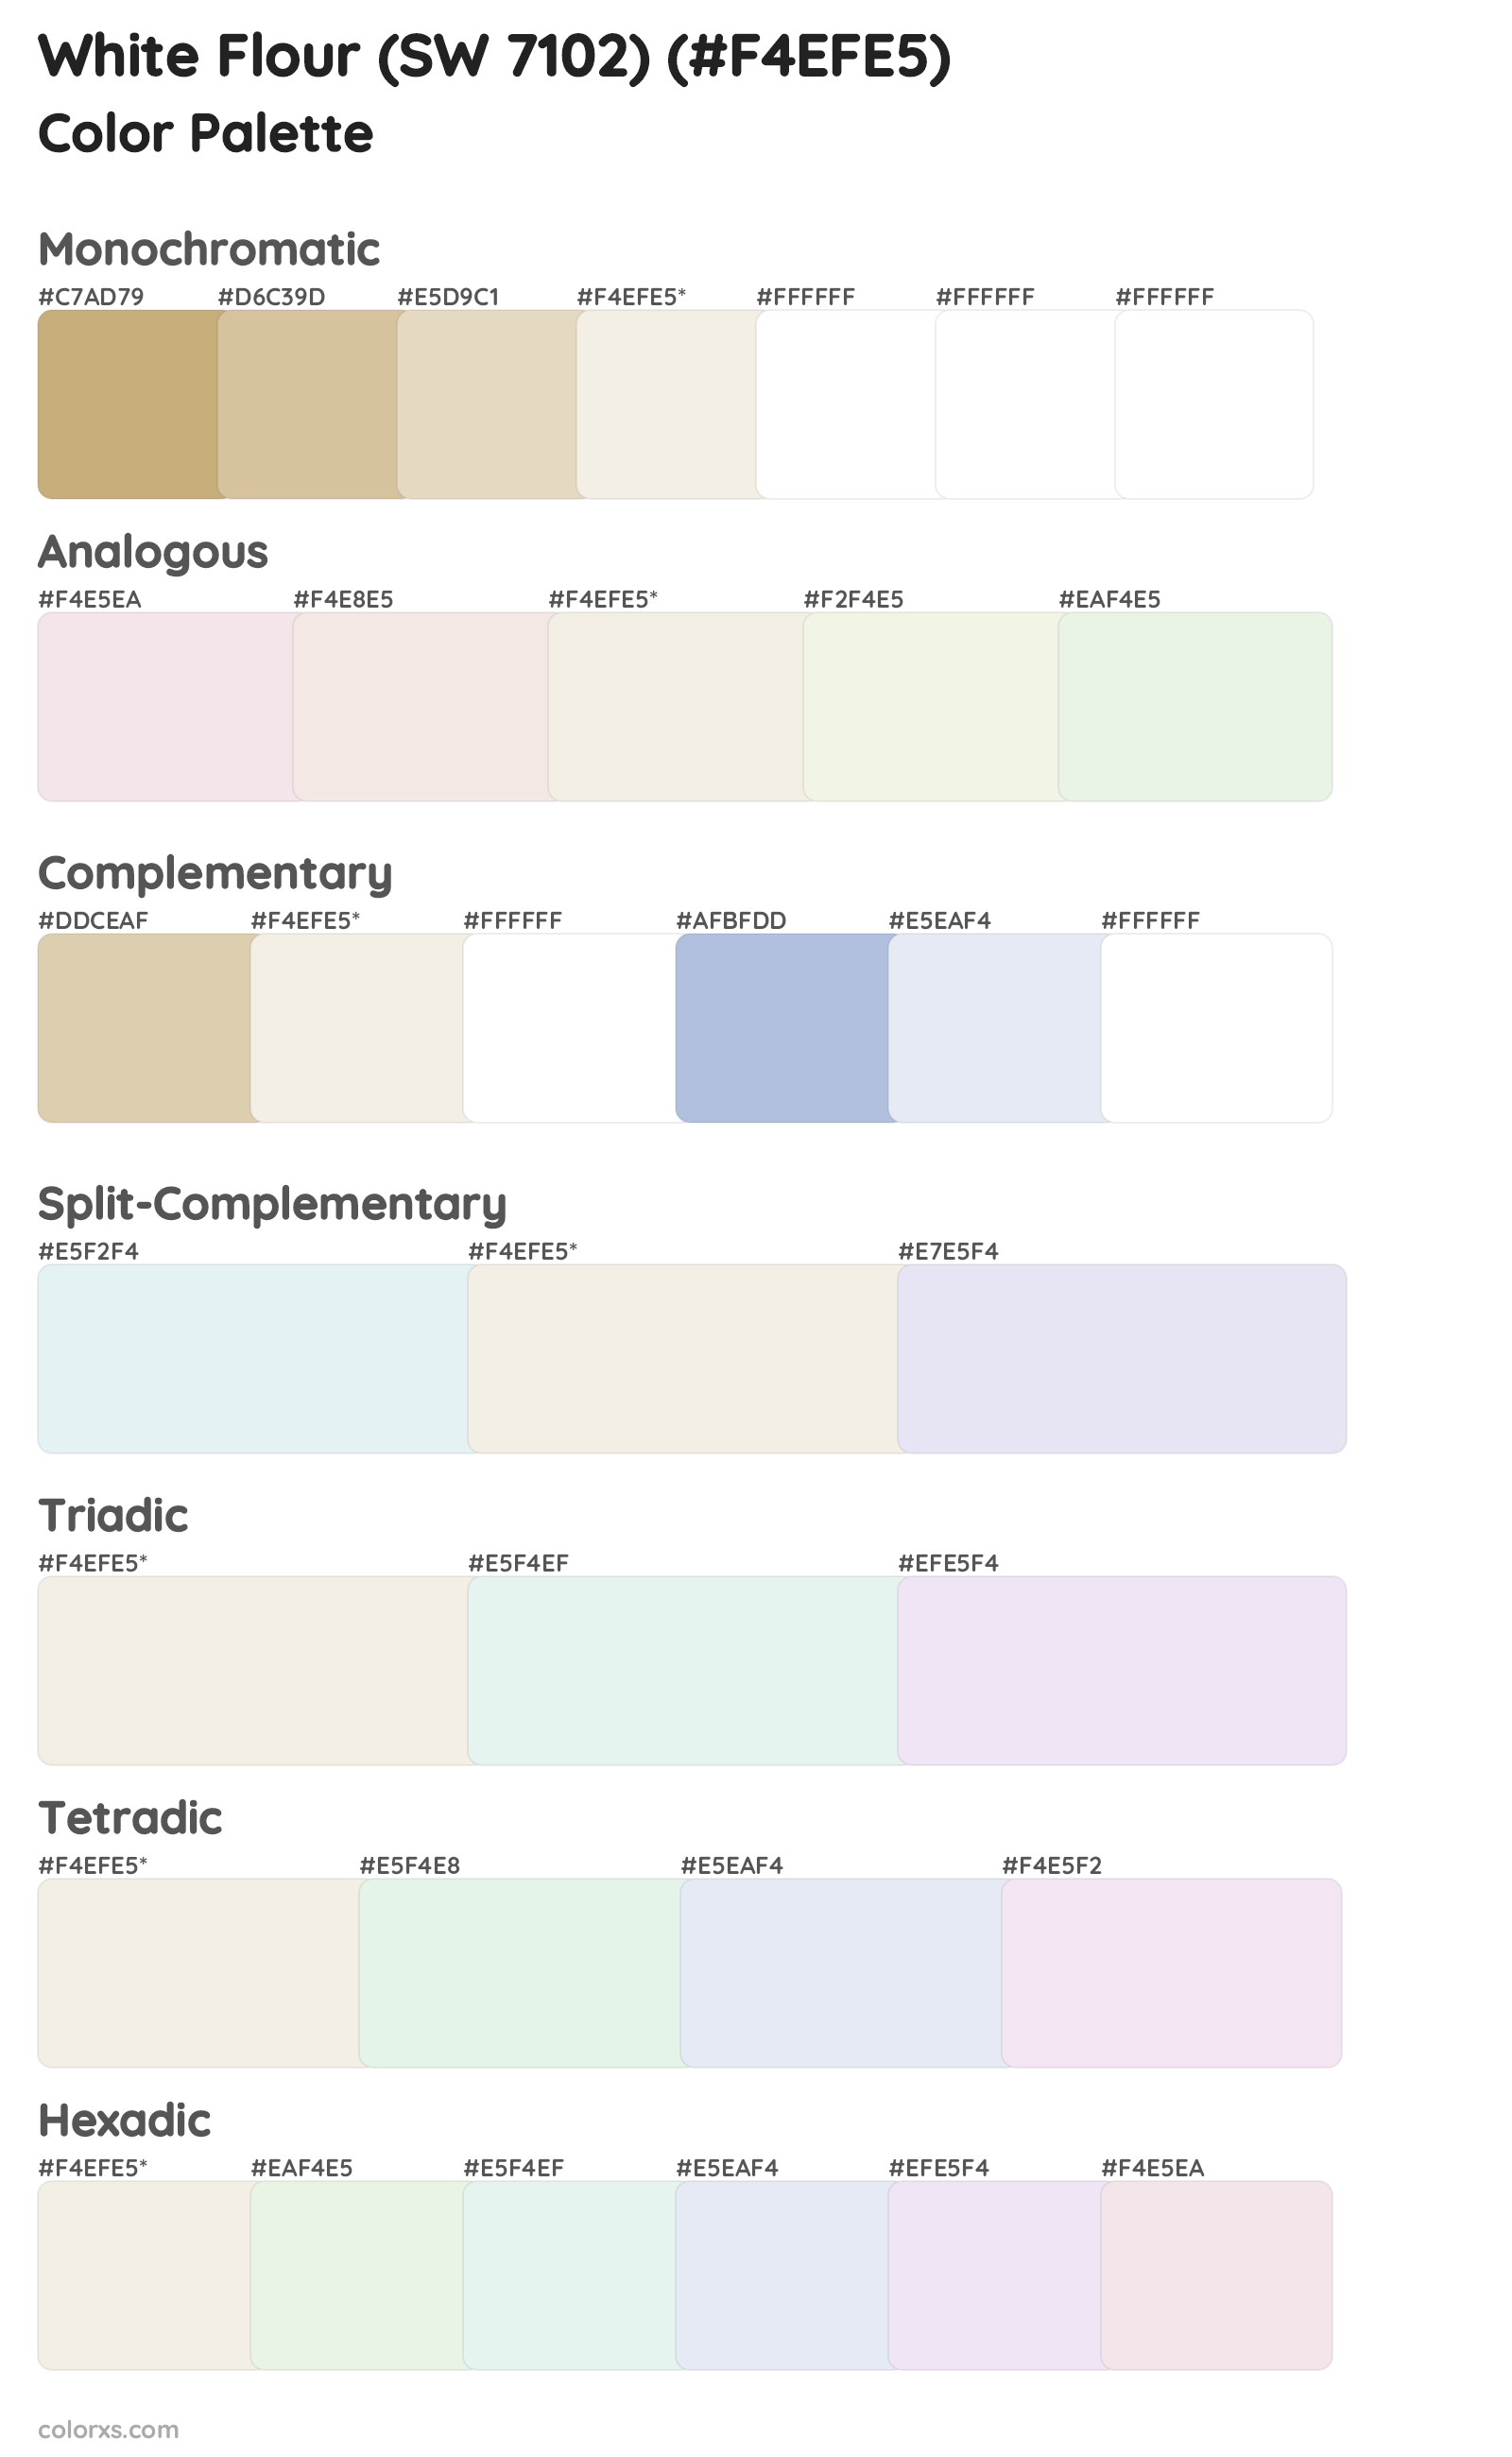 White Flour (SW 7102) Color Scheme Palettes